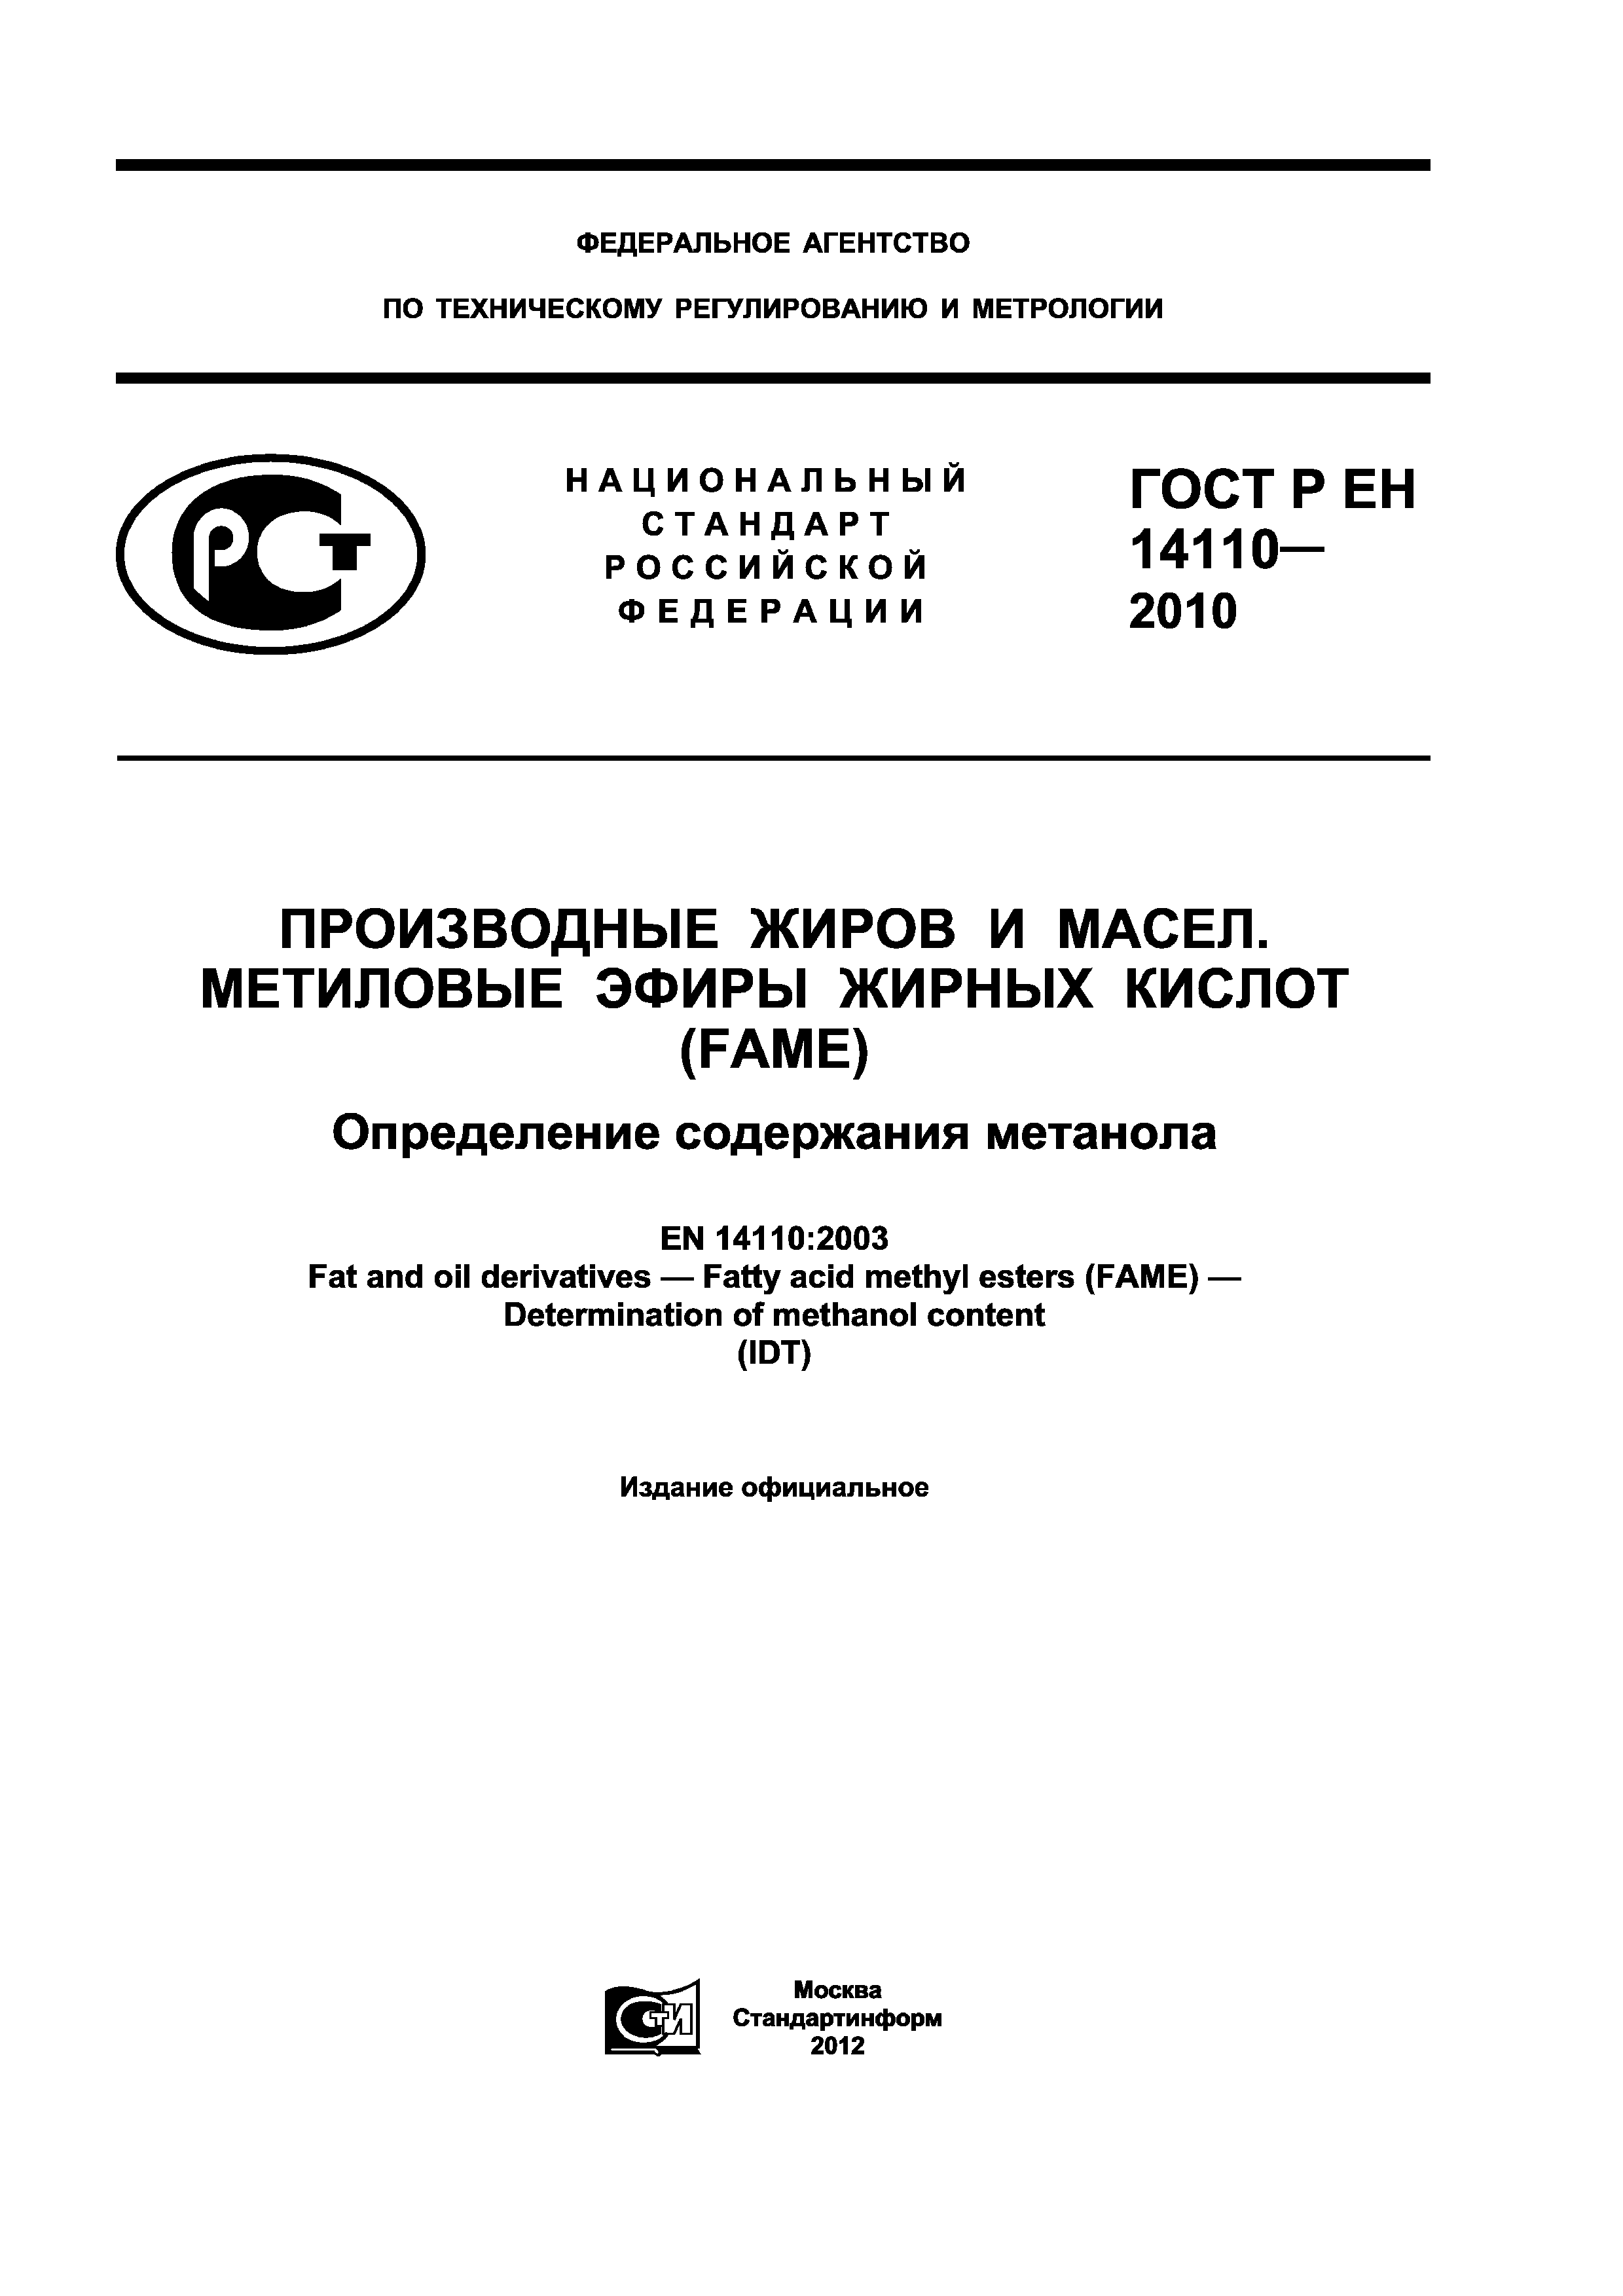 ГОСТ Р ЕН 14110-2010